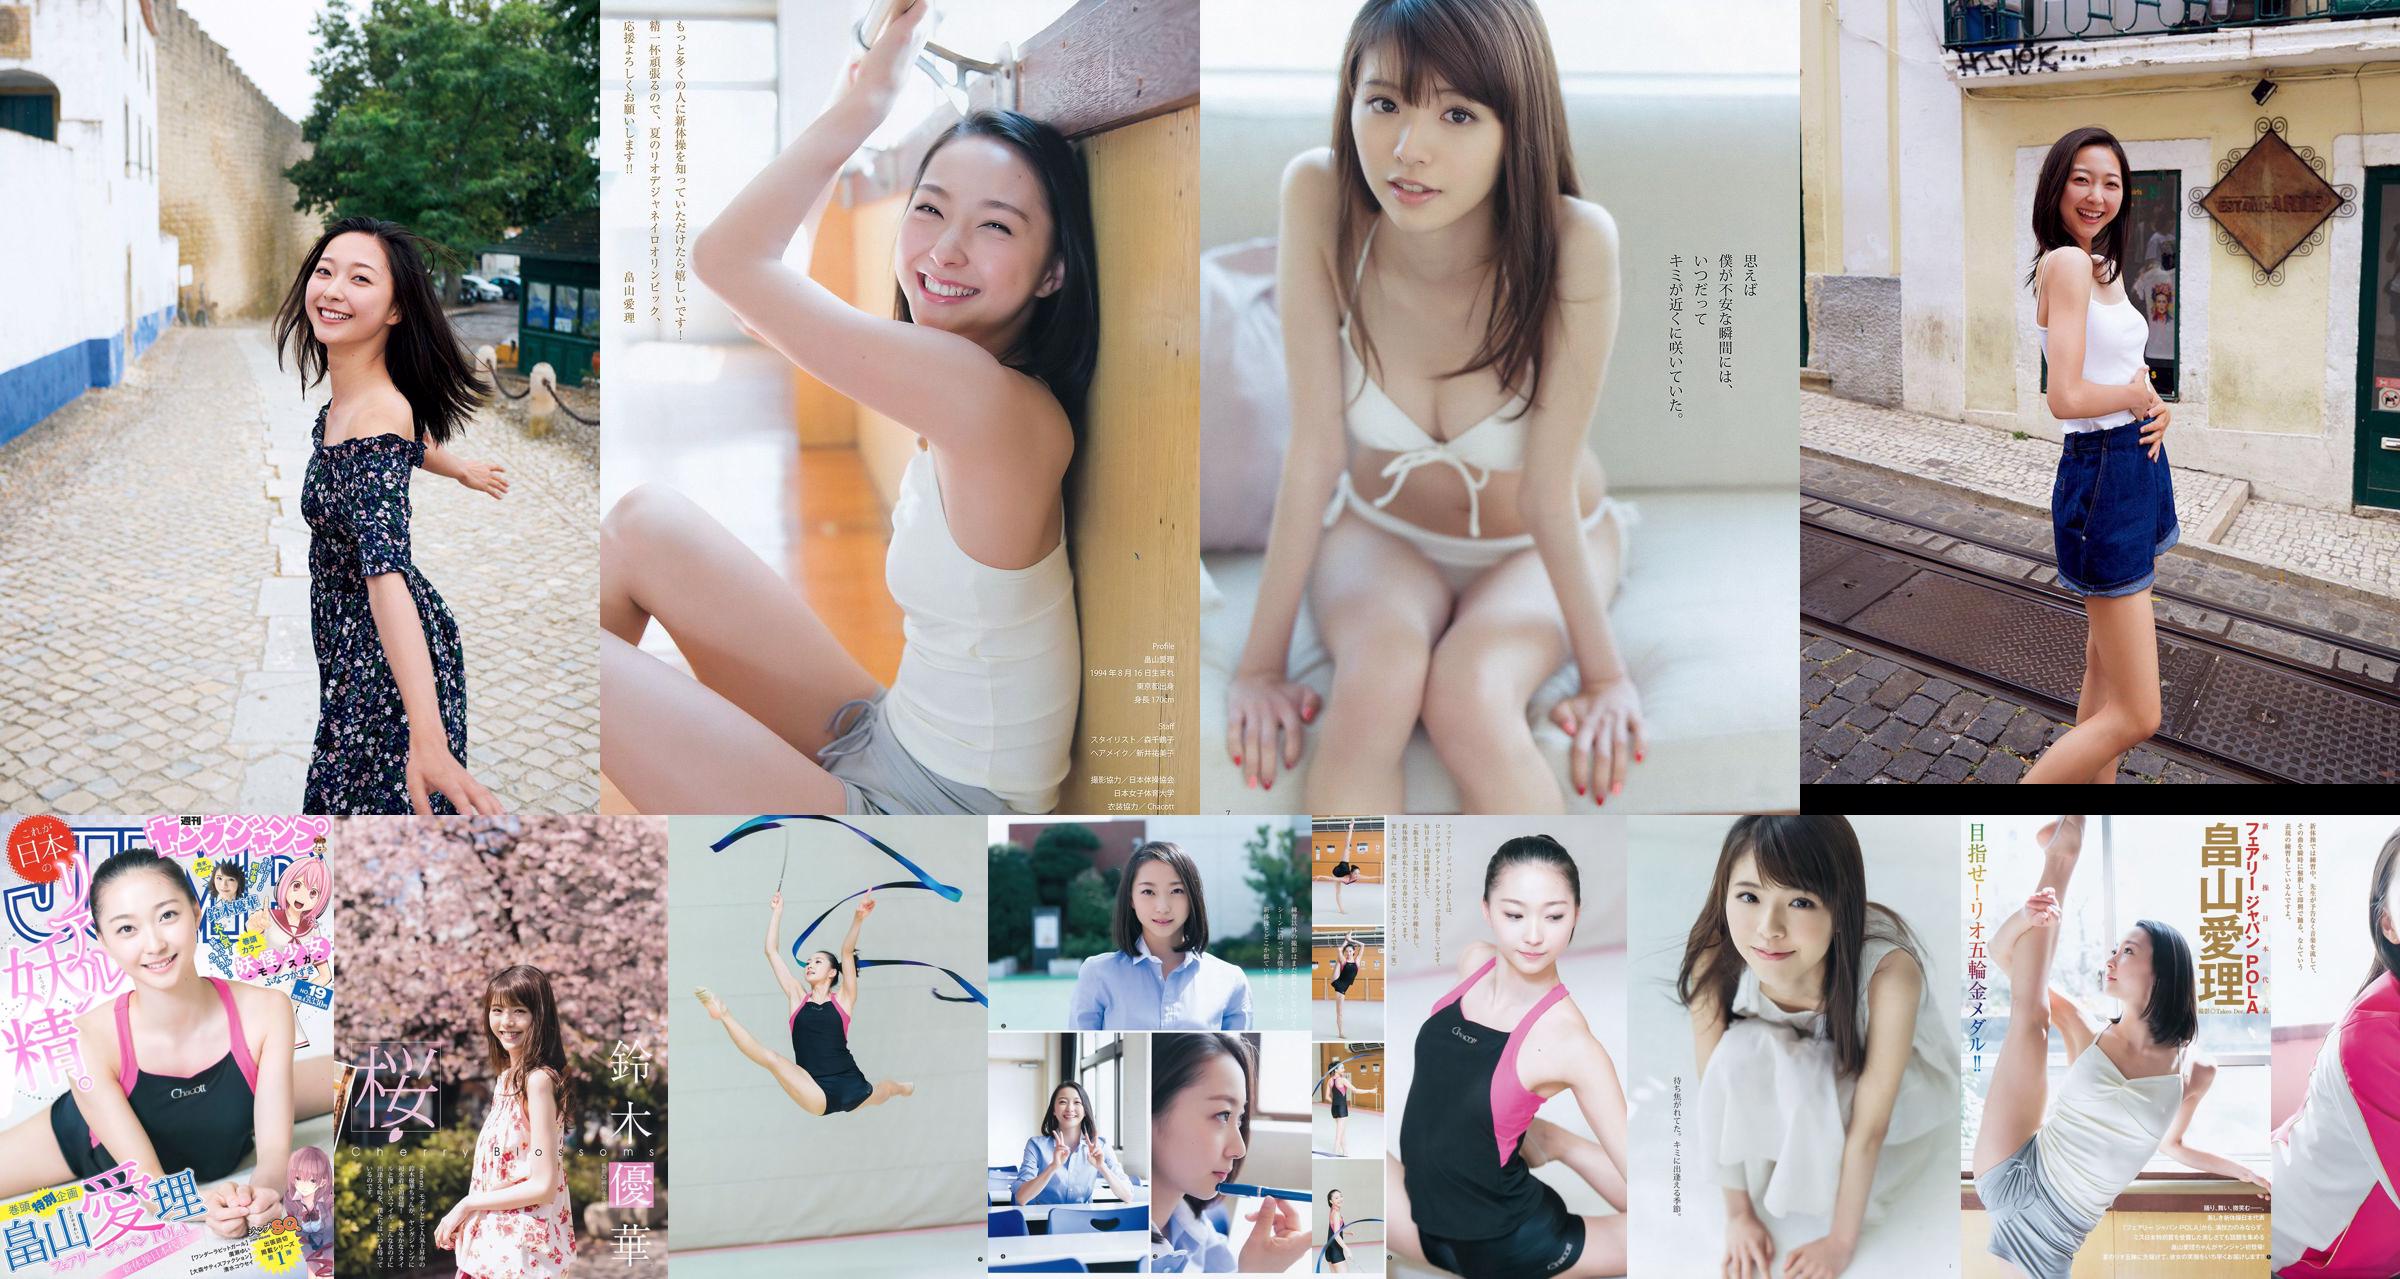 [ENTAME] Mai Shiraishi Nanase Nishino Rena Shimada Yui Takano Ausgabe März 2014 Foto No.7ad63f Seite 2